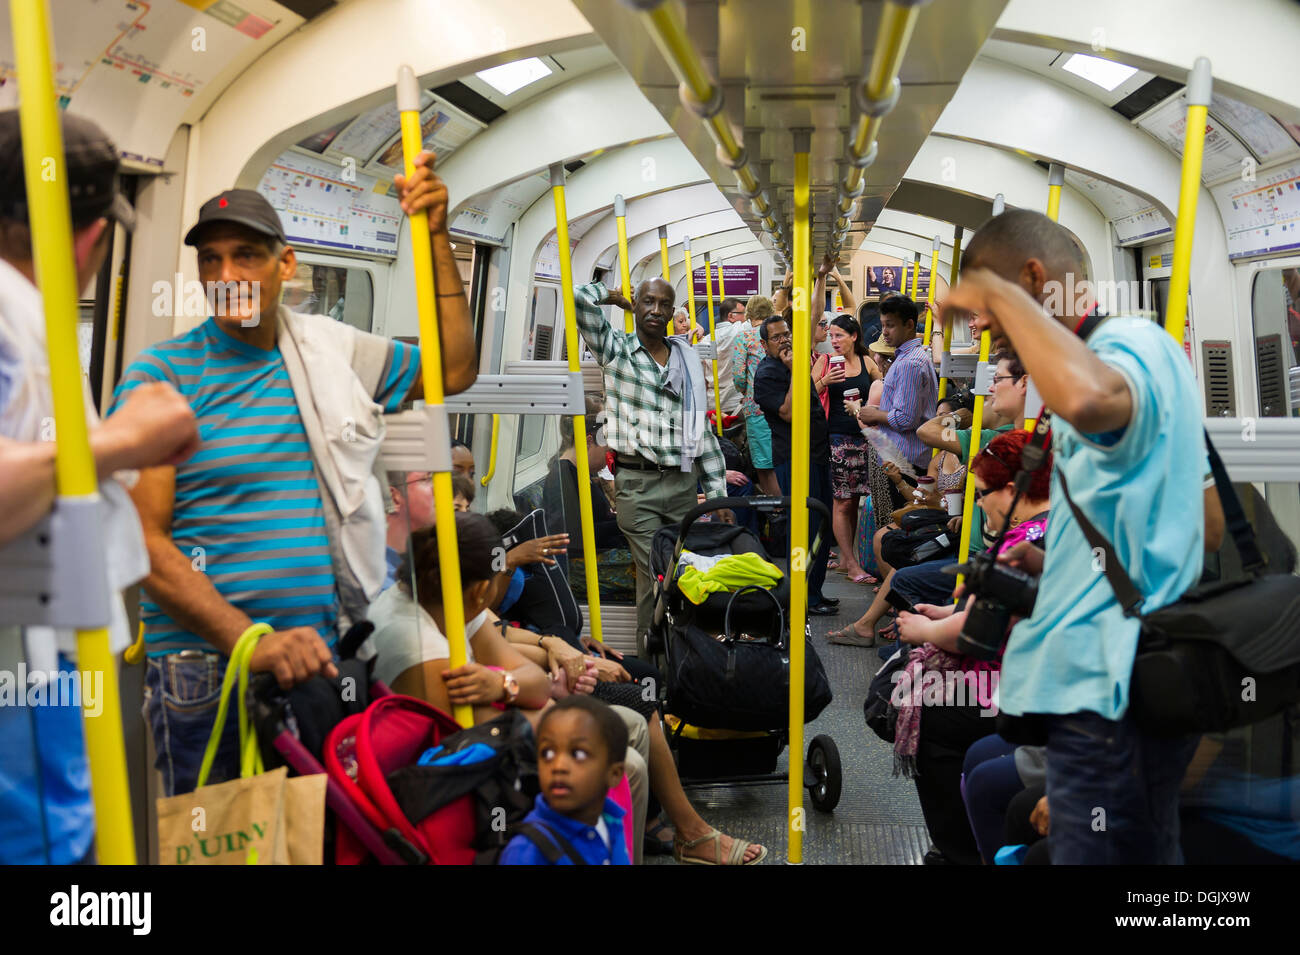 Passagiere in einem heißen Rohr Zug Wagen in London. Stockfoto